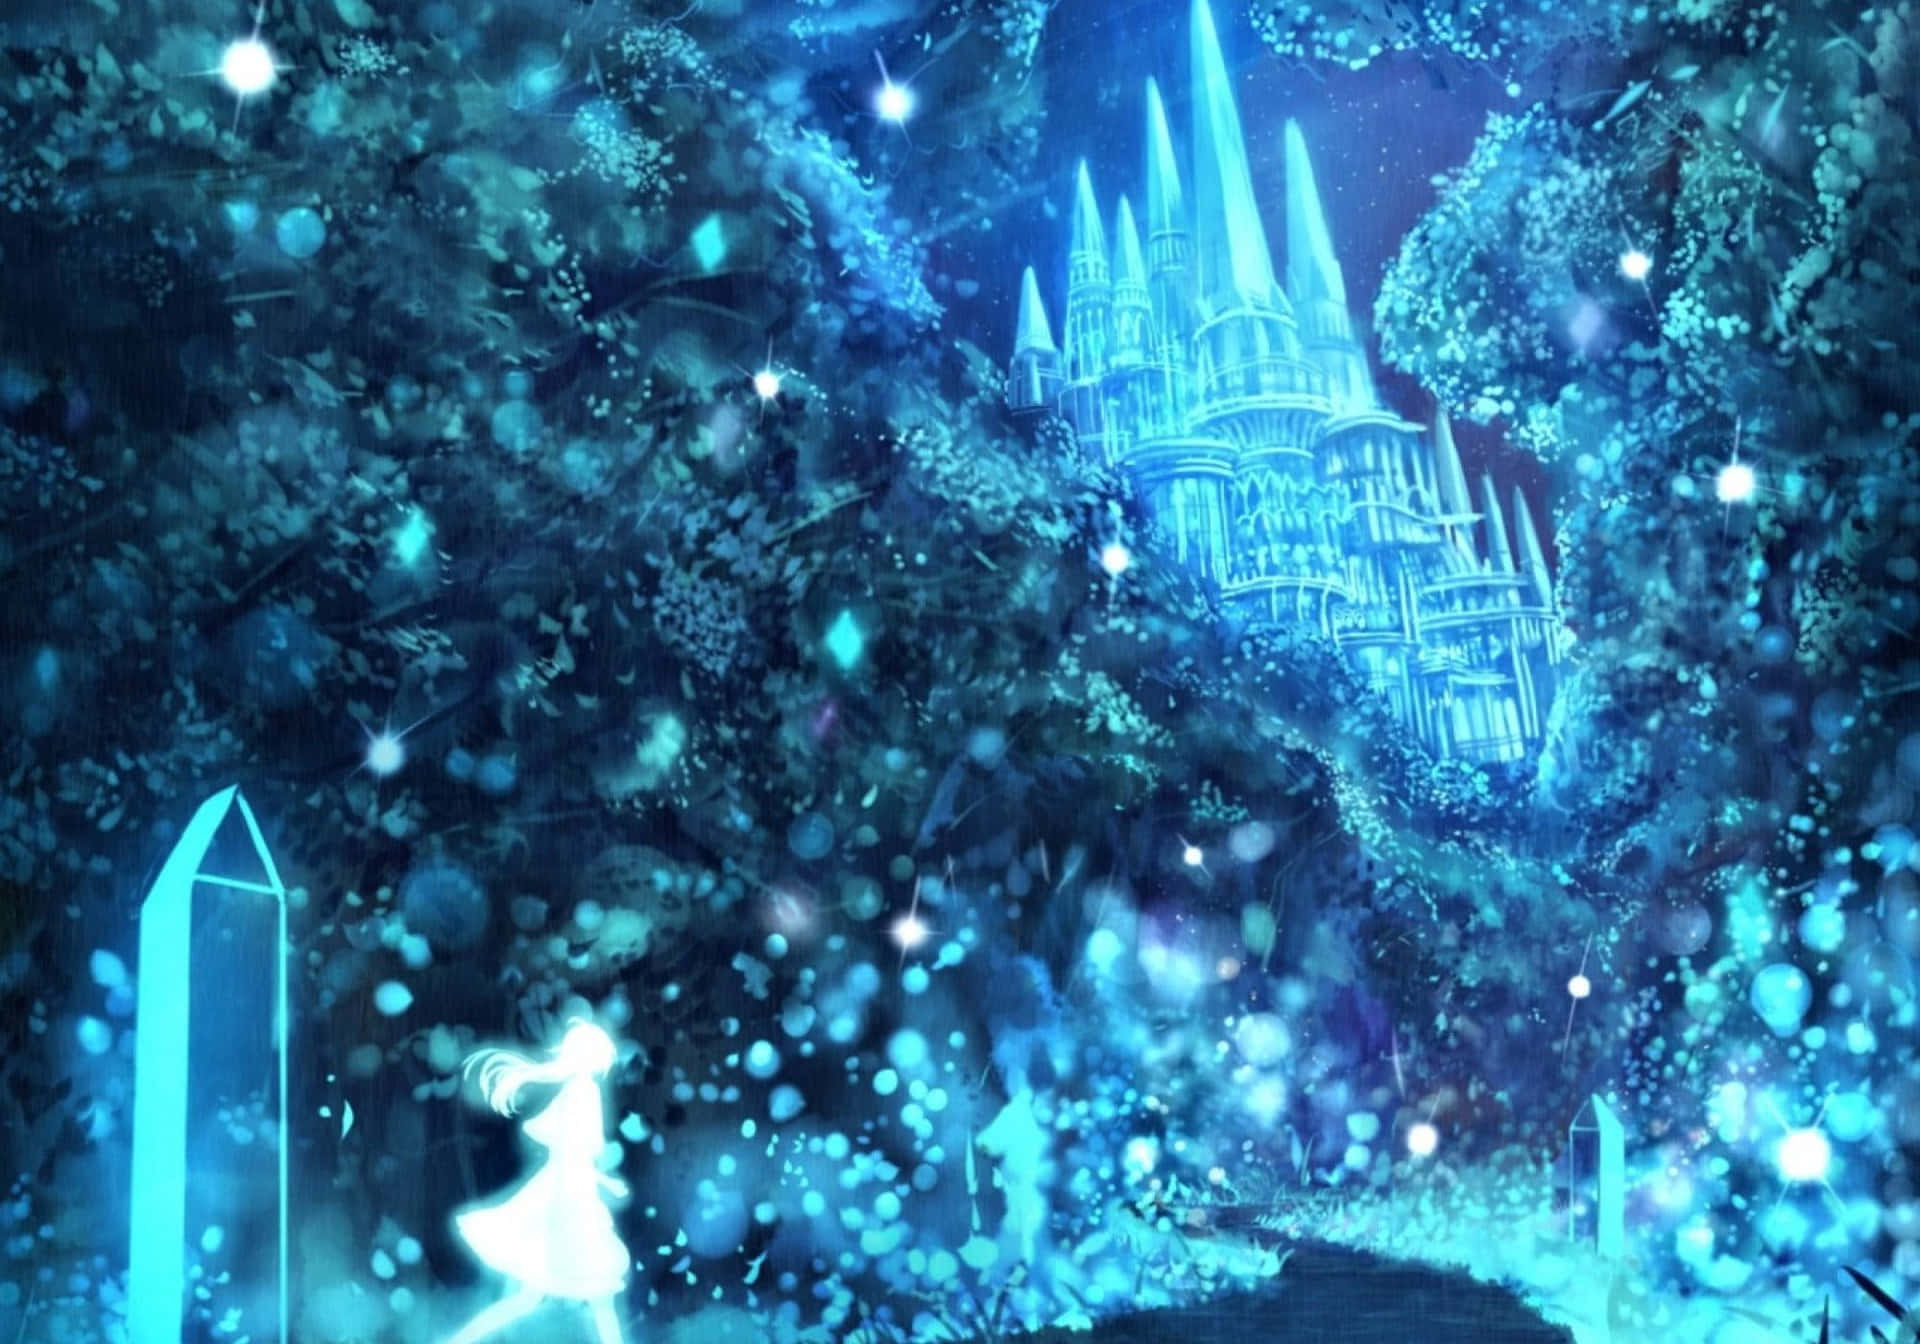 Frozen Castle in a Winter Wonderland